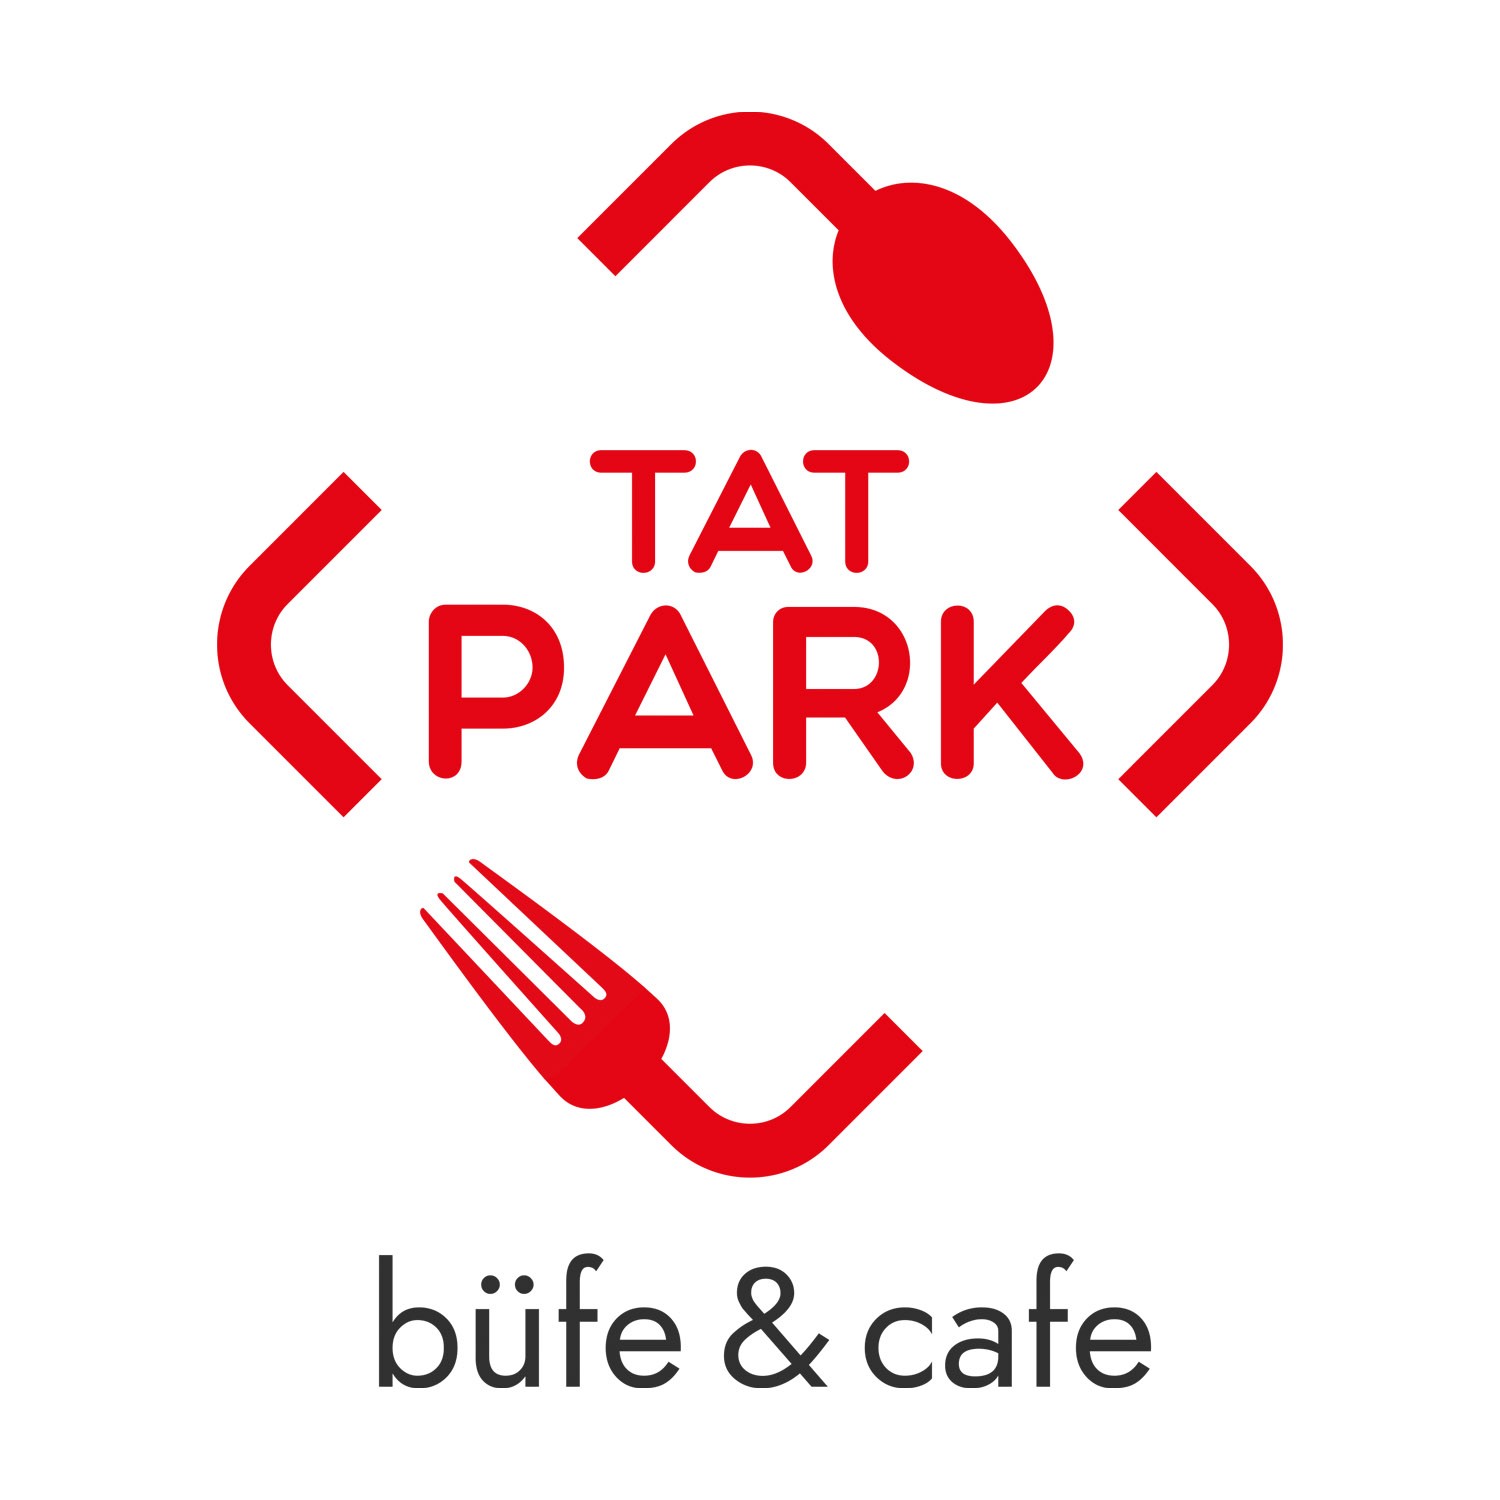 Tat Park Cafe'ye yaptığımız menü, el ilanı, ve afiş tasarımlarından çok memnun kalmış ve Ajans724.com 'aun referansıdır.